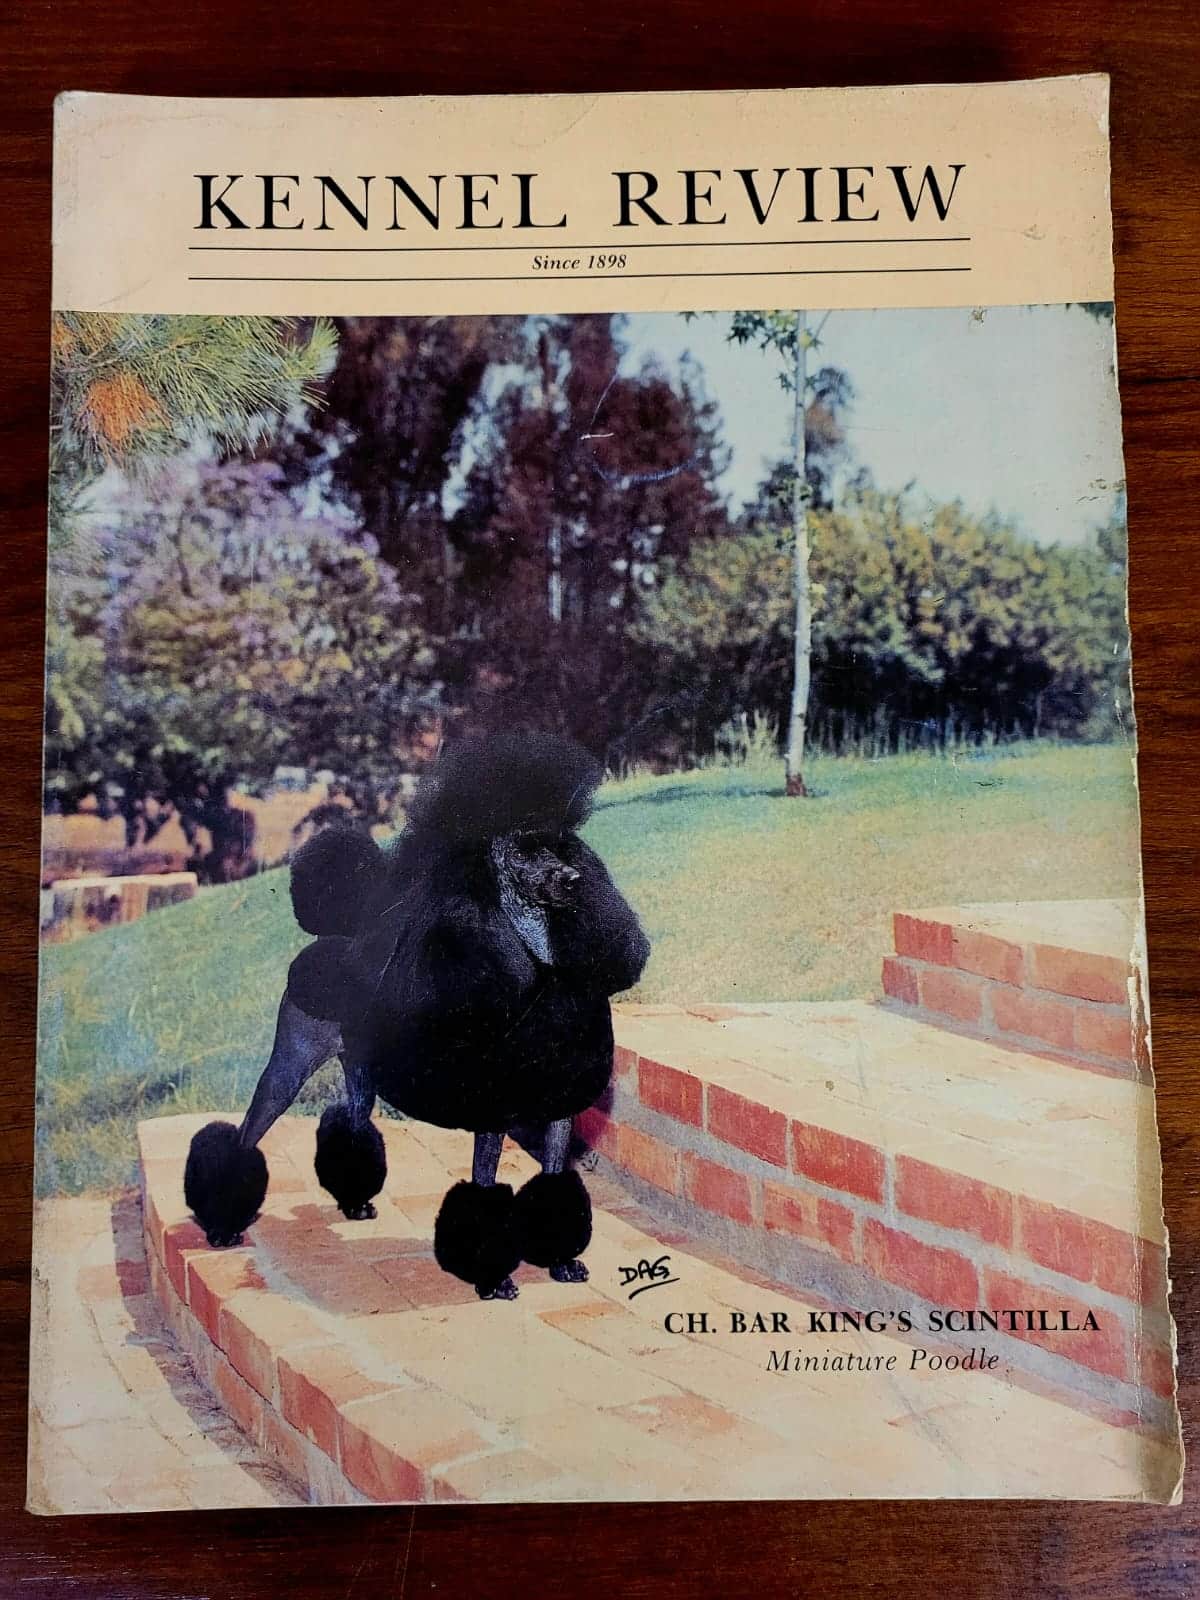 Kennel review a Casa do Colecionador